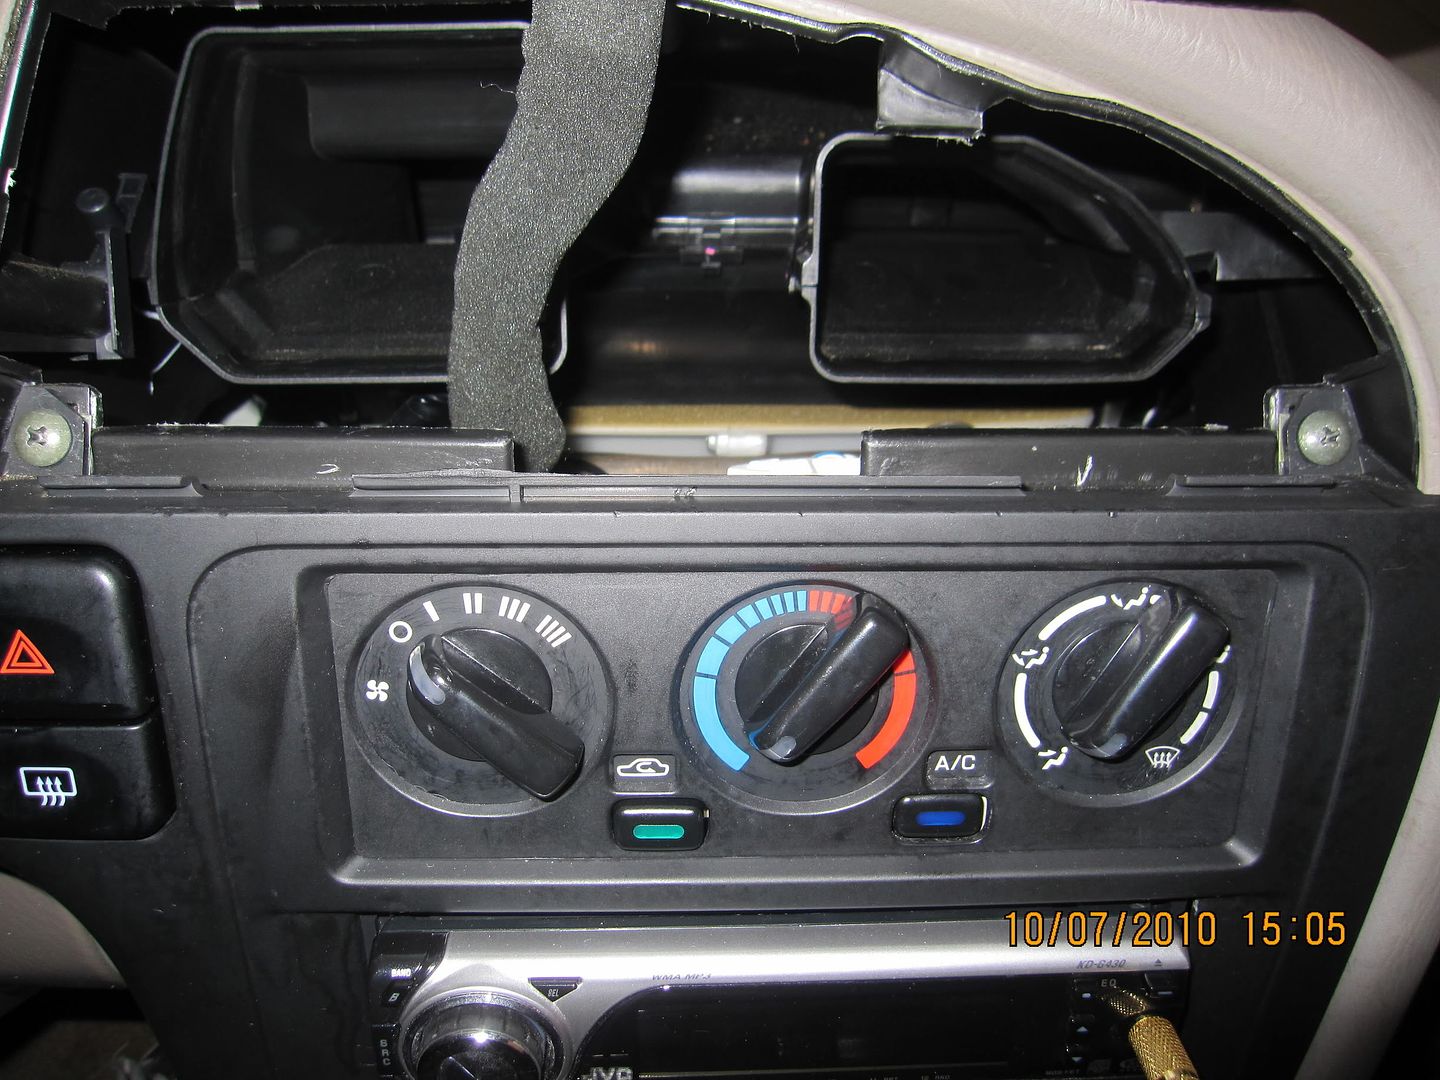 2001 Nissan pathfinder dash clock #10